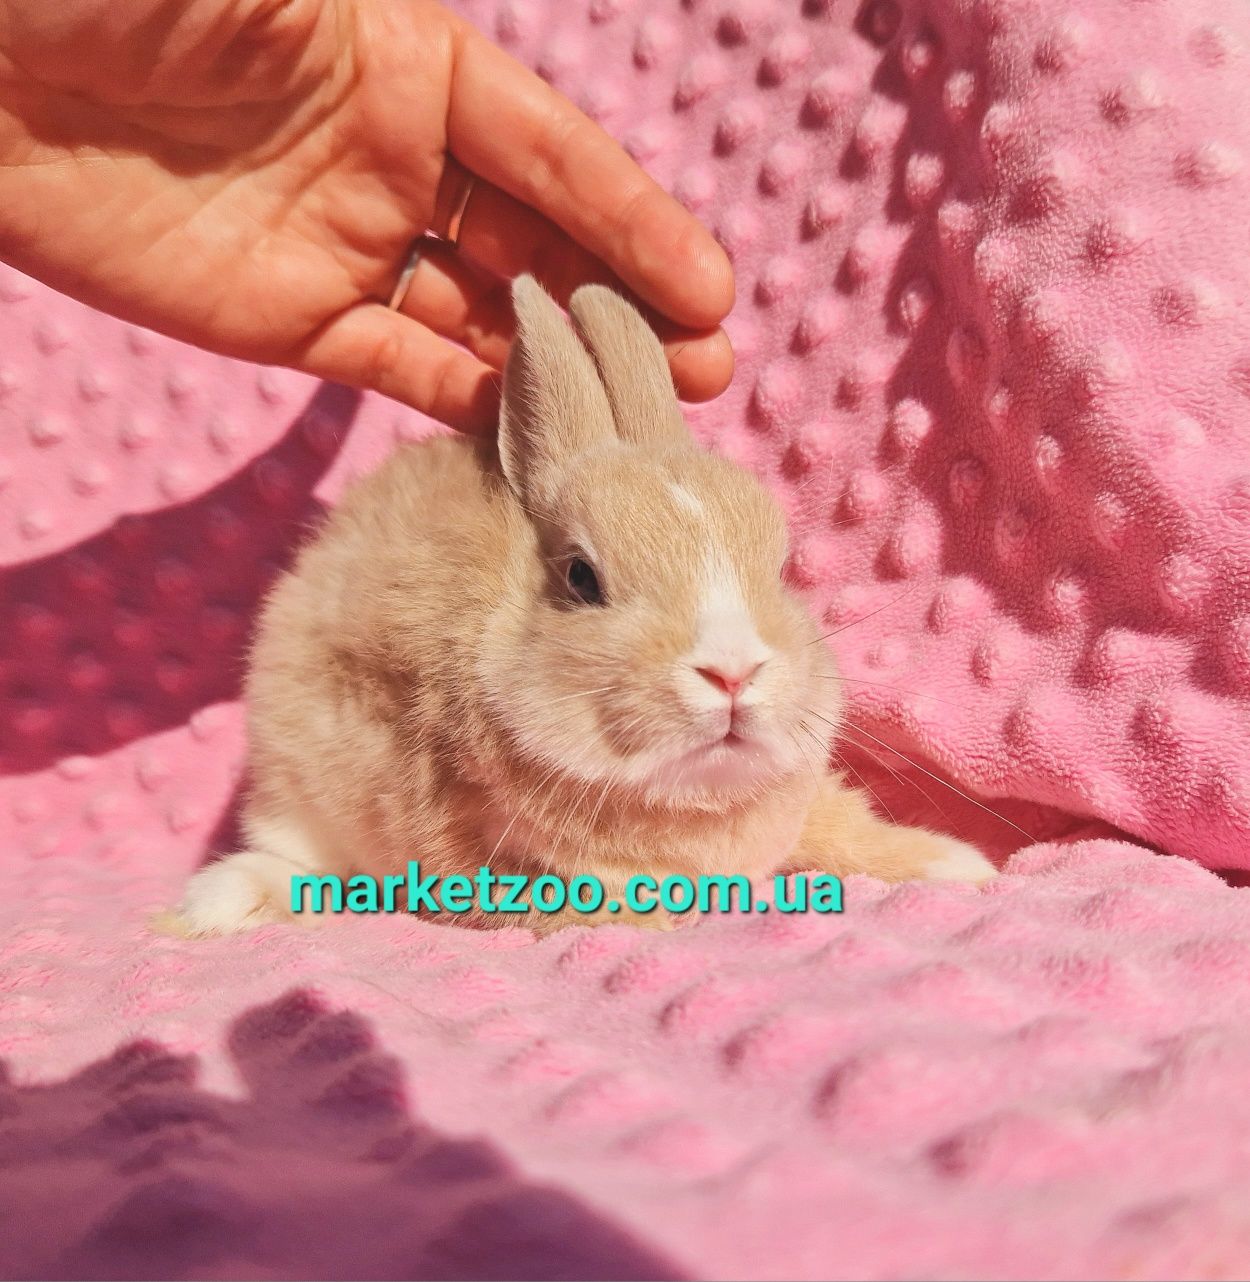 Мини міні netherlandНідерландський,нидерландский карликовые кролики